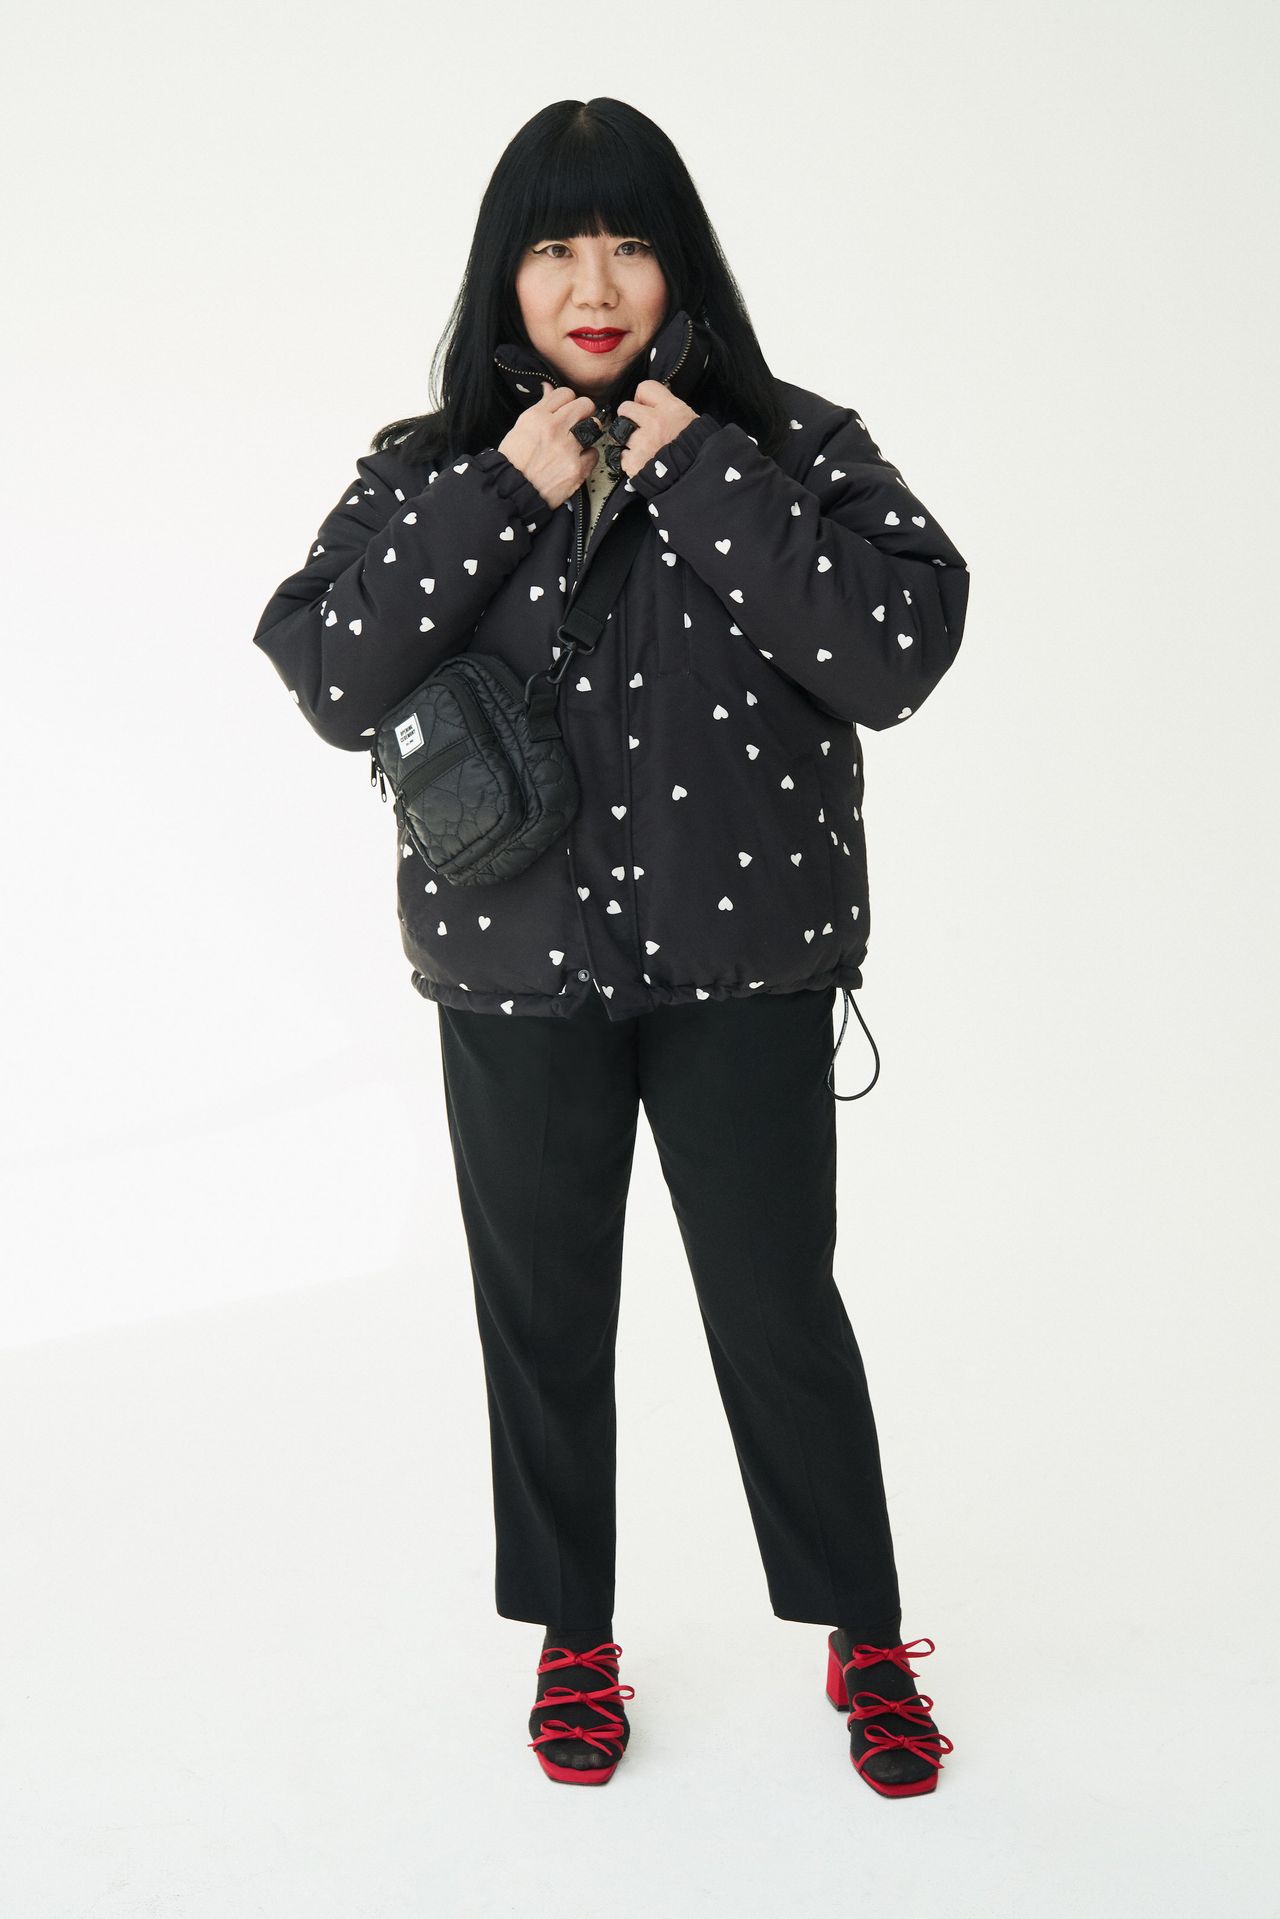 Anna Sui (fashion designer)